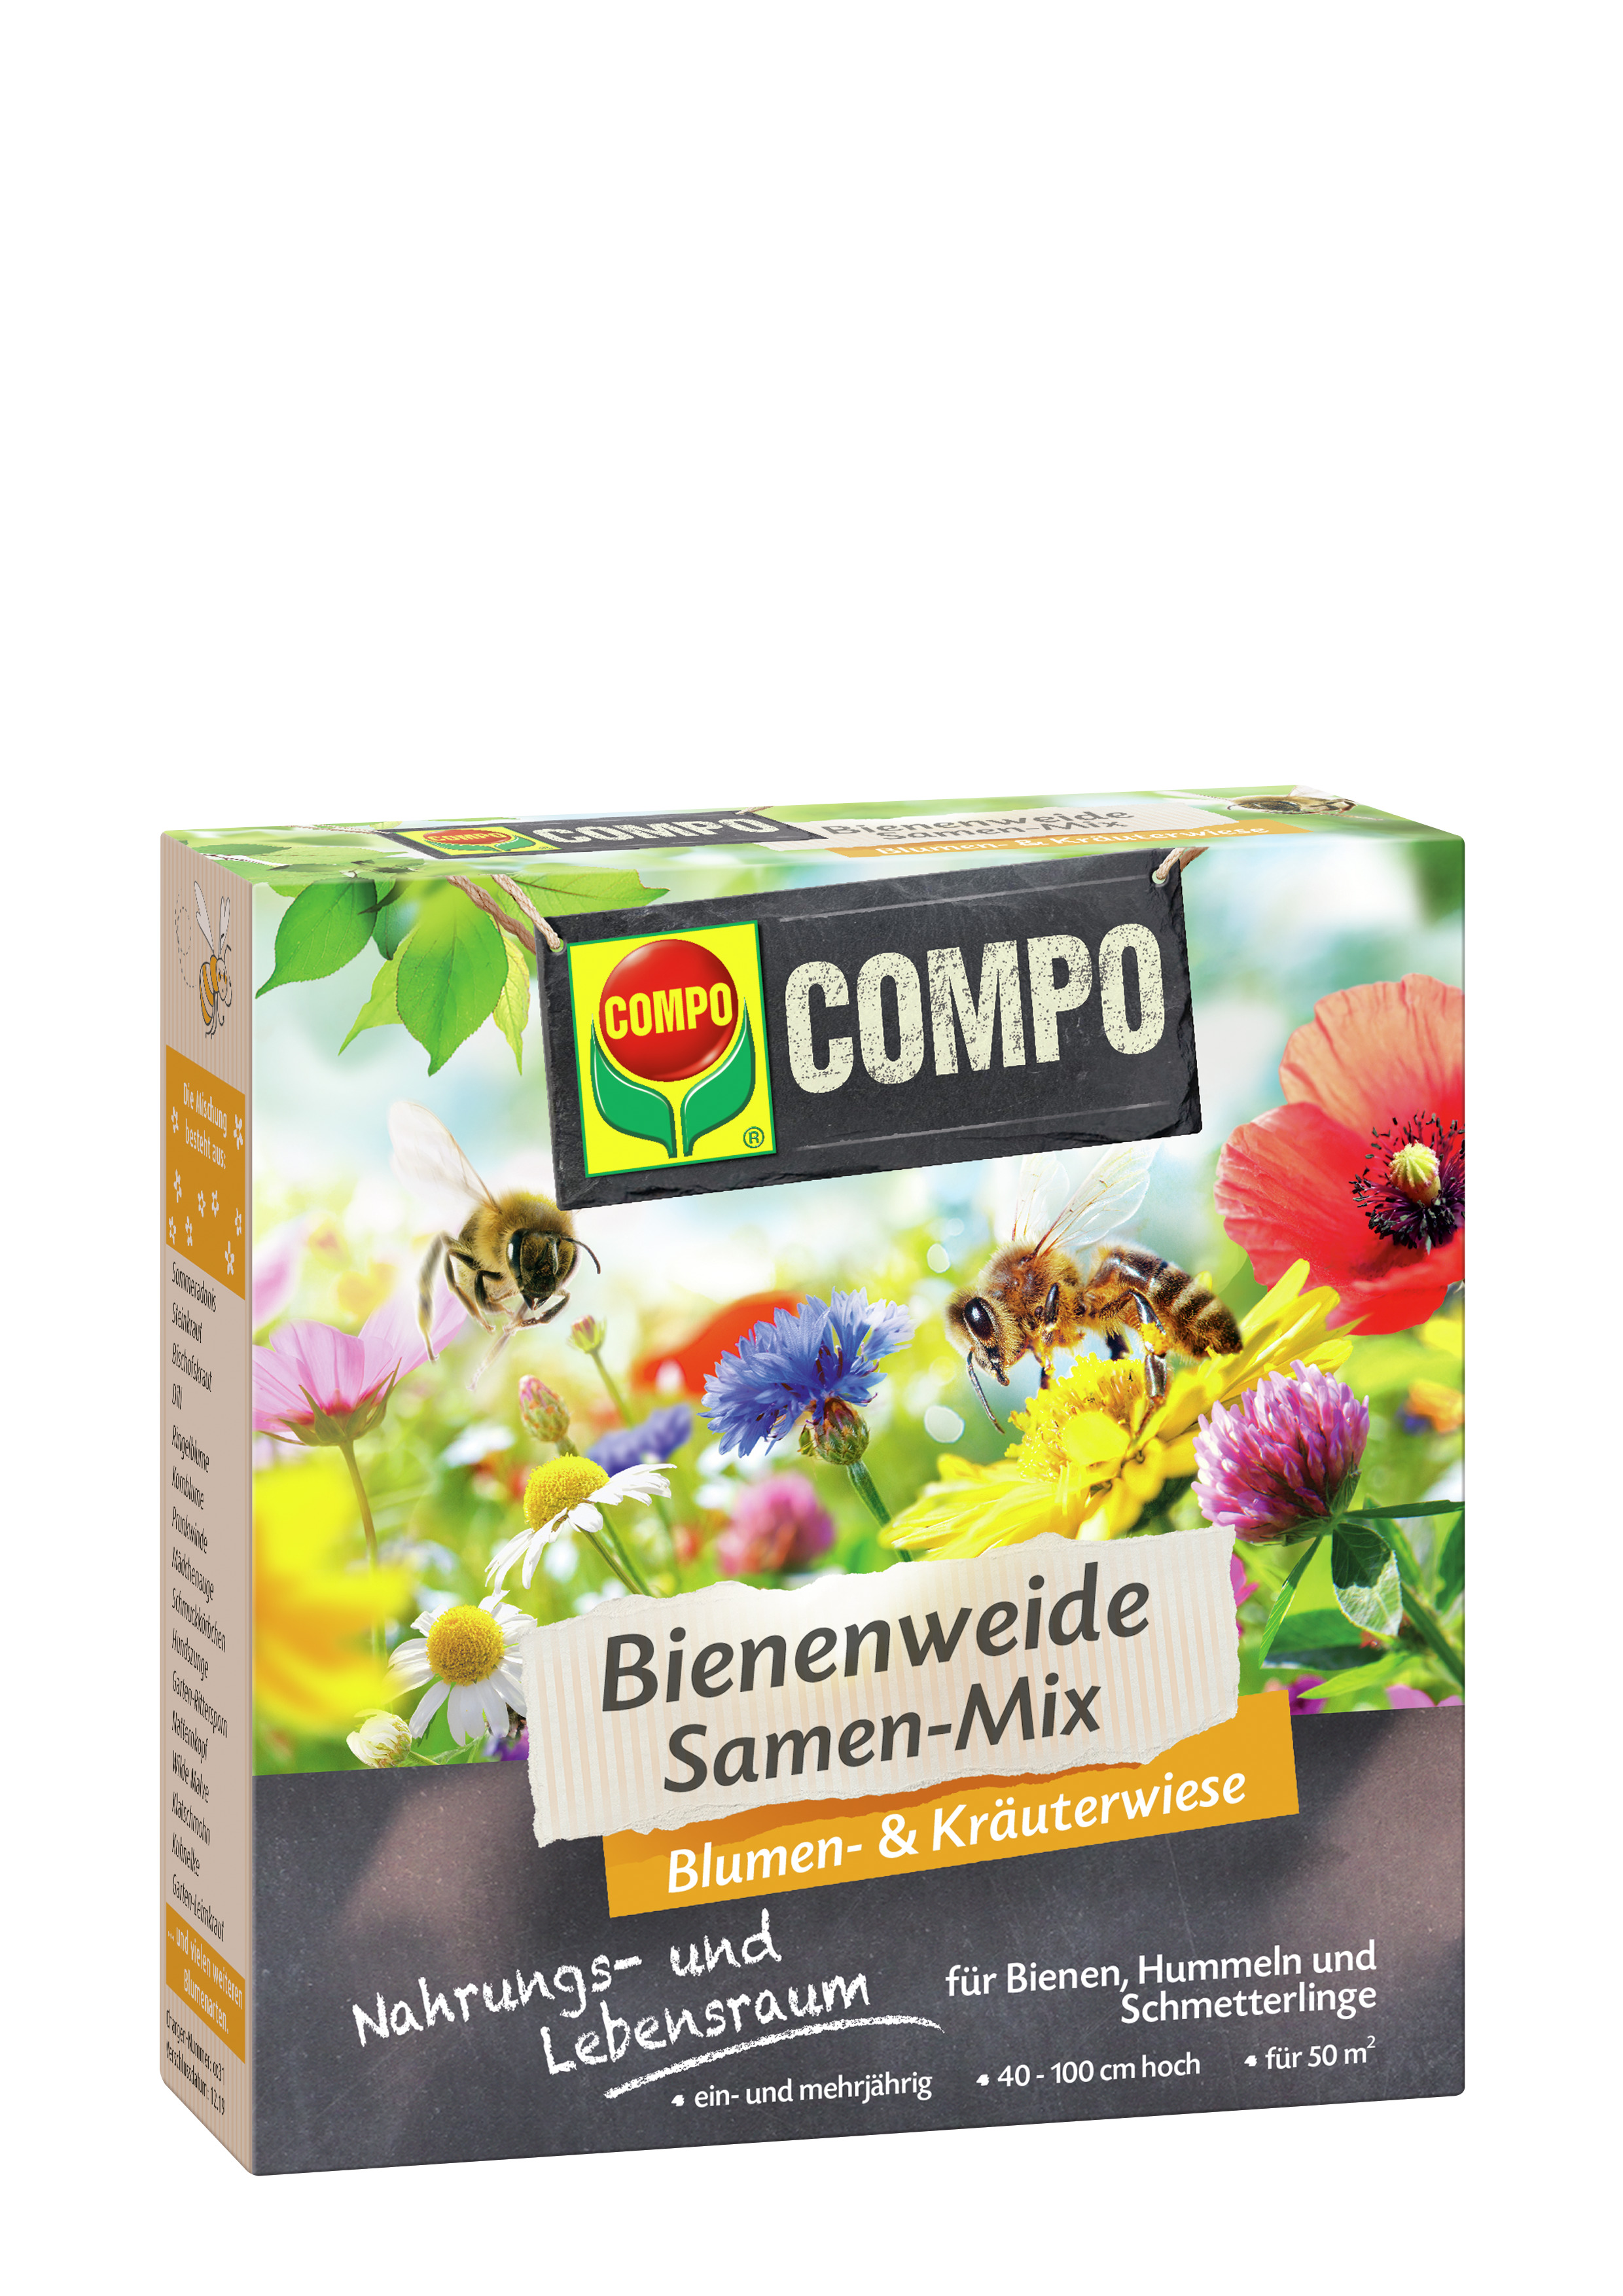 COMPO COMPO Bienenweide Samen-Mix 50qm 300g Compo EREG